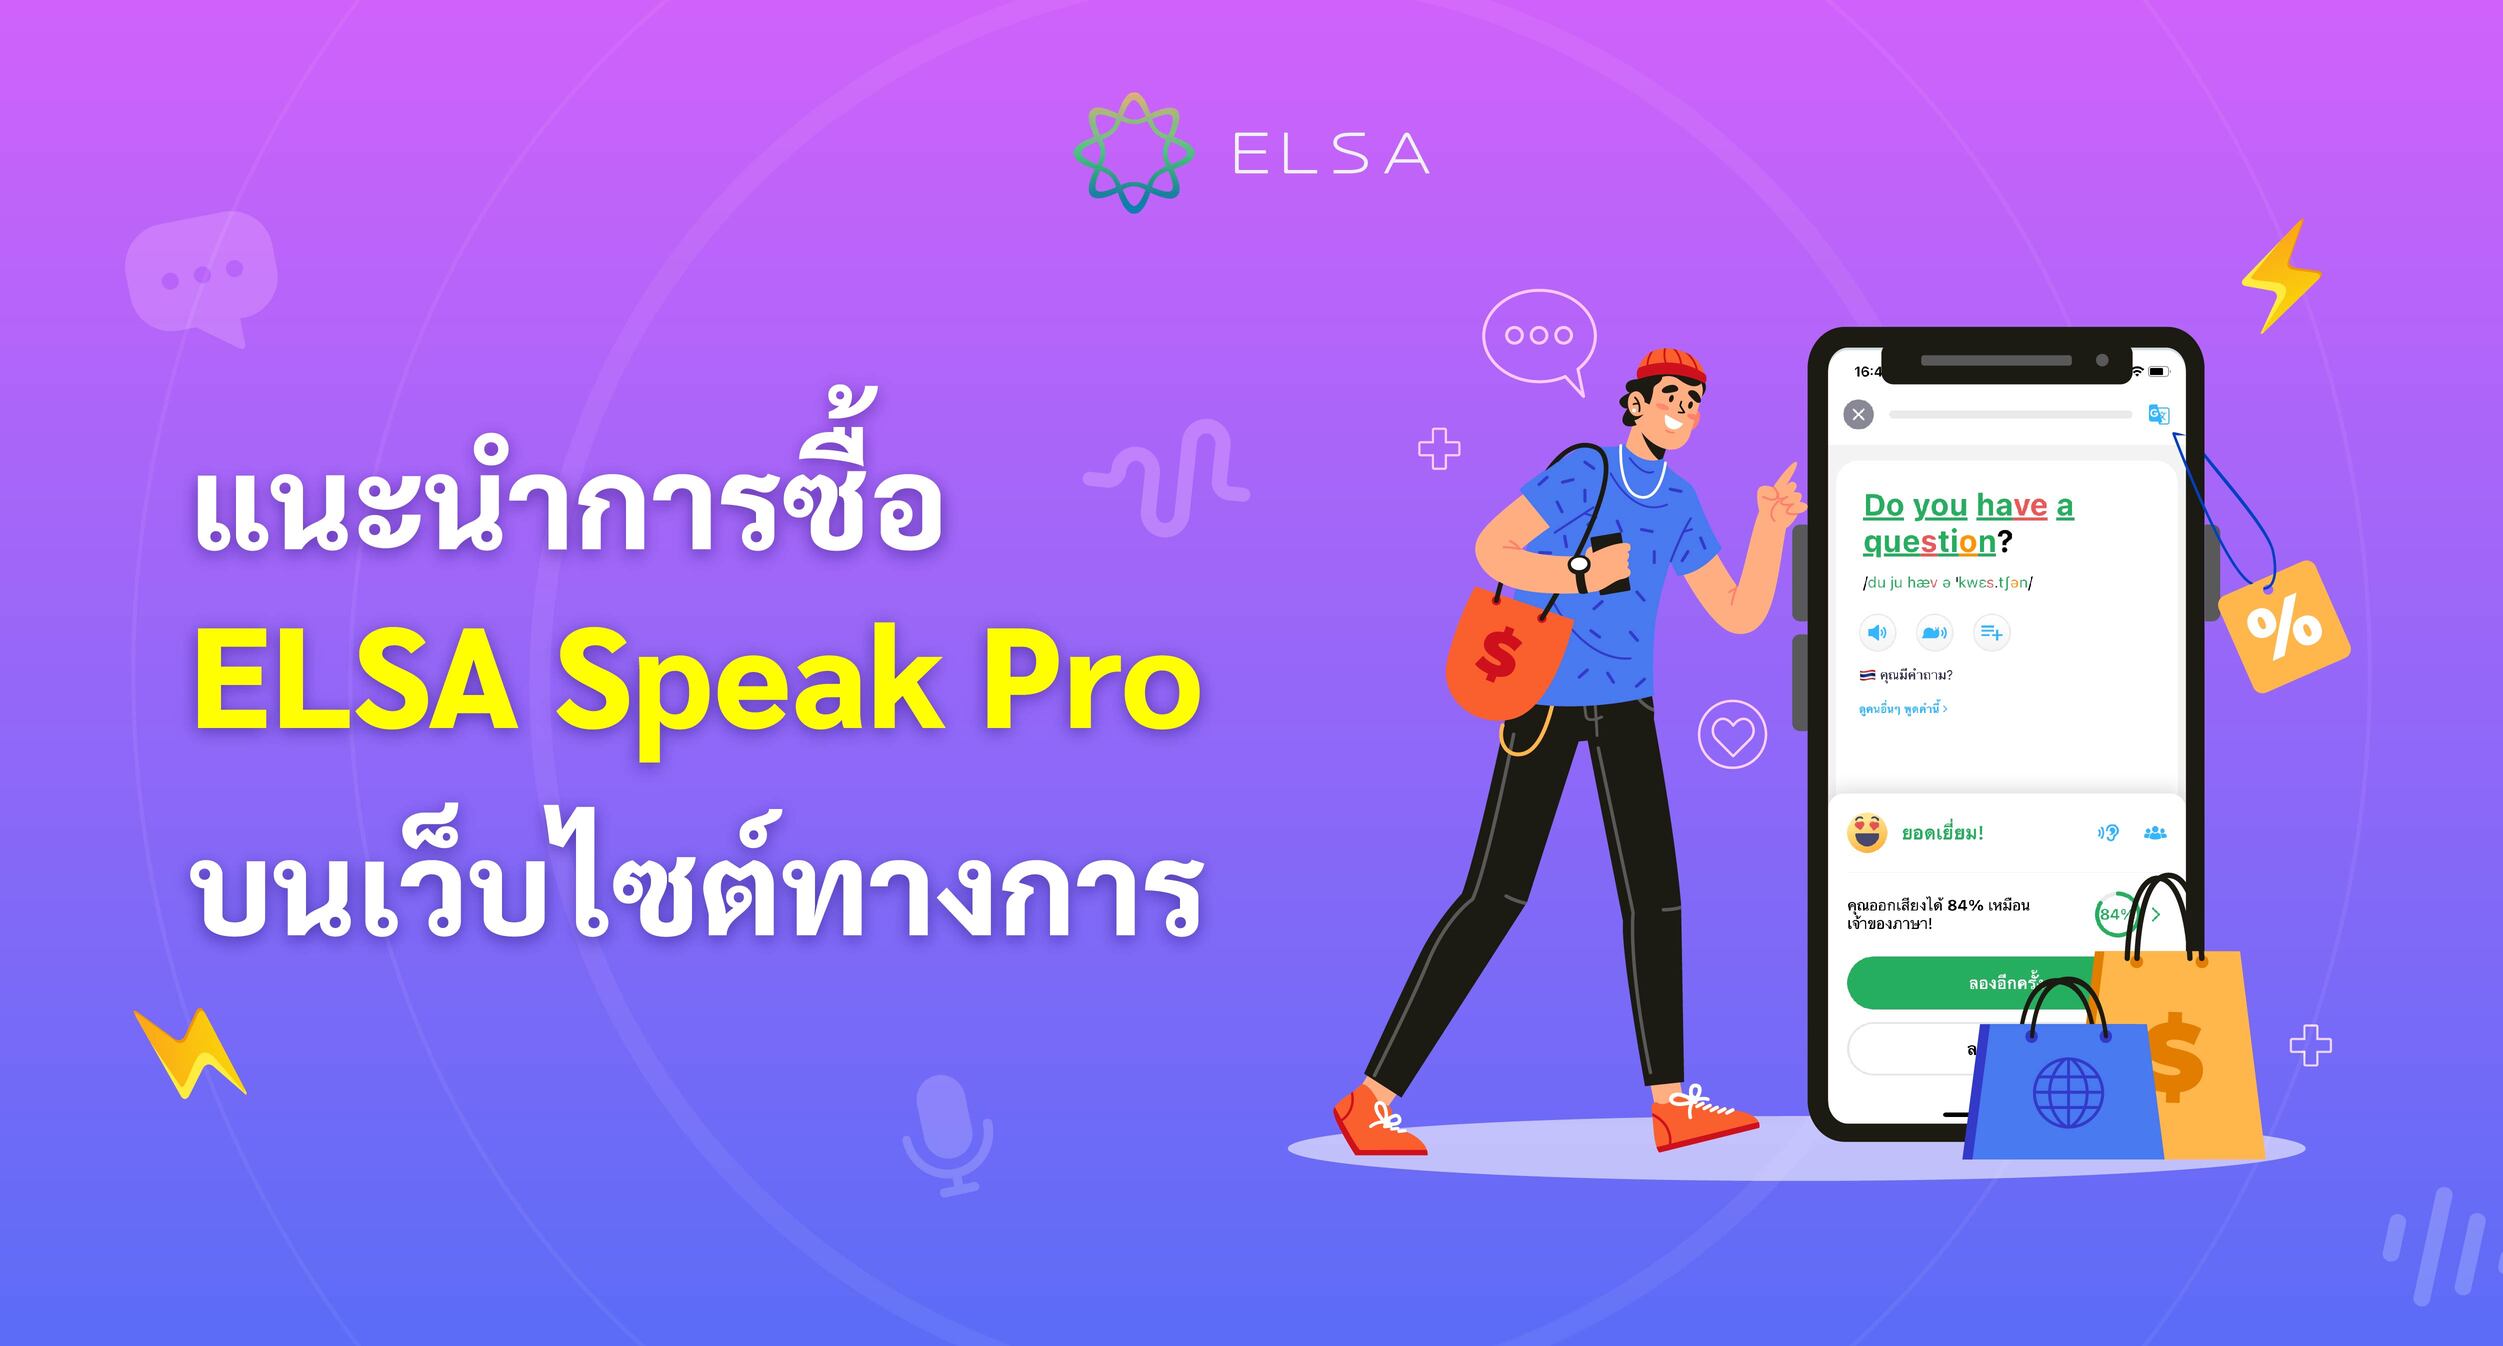 แนะนำวิธีการซื้อ ELSA Speak Pro